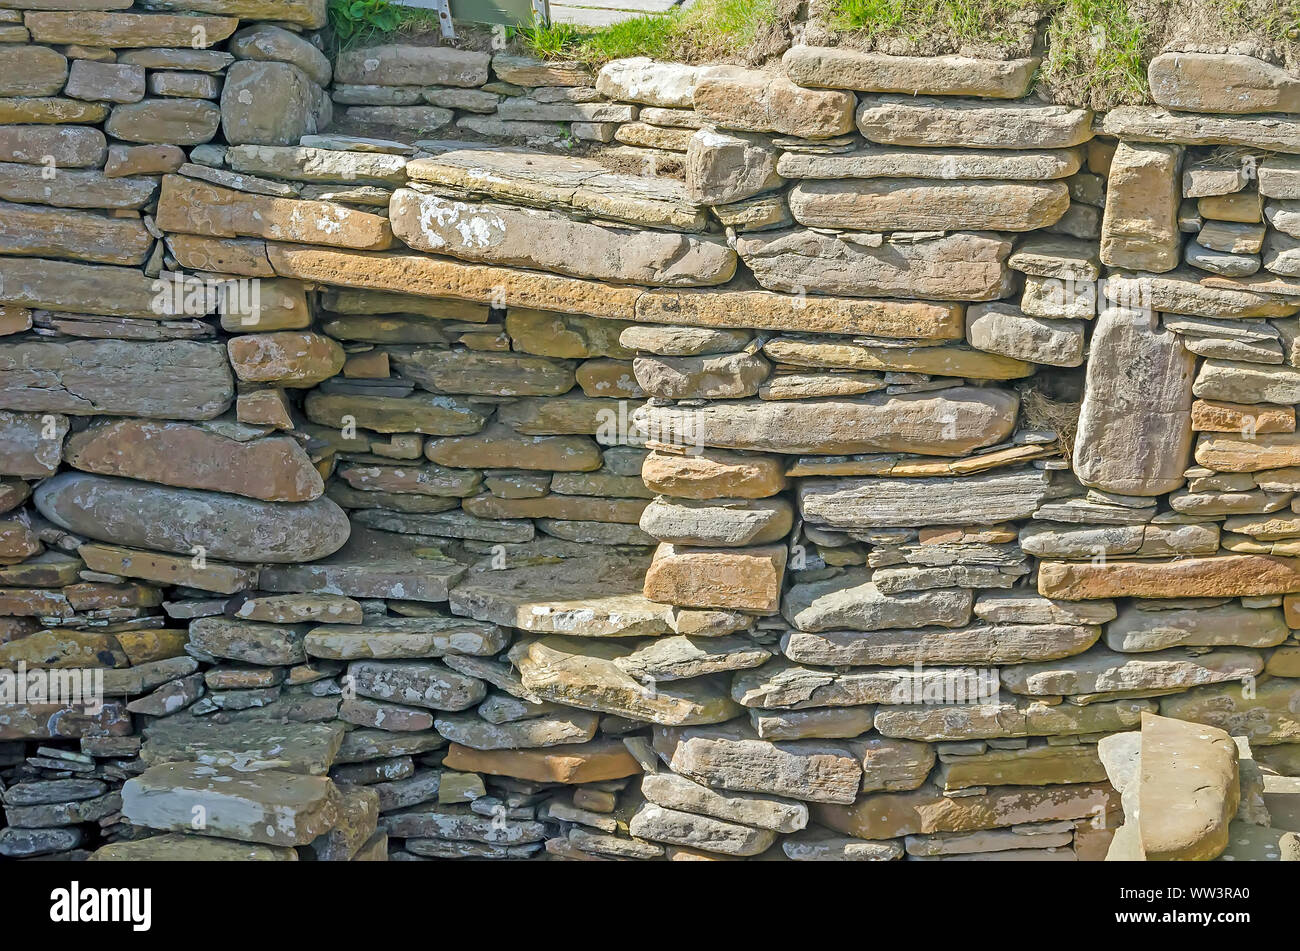 Skara Brae Neolitchic Abrechnung mehr als 5.000 Jahre alt ist der am besten erhaltene Steinzeit jungsteinzeitliche Dorf in Nordeuropa, Orkney, Schottland Stockfoto